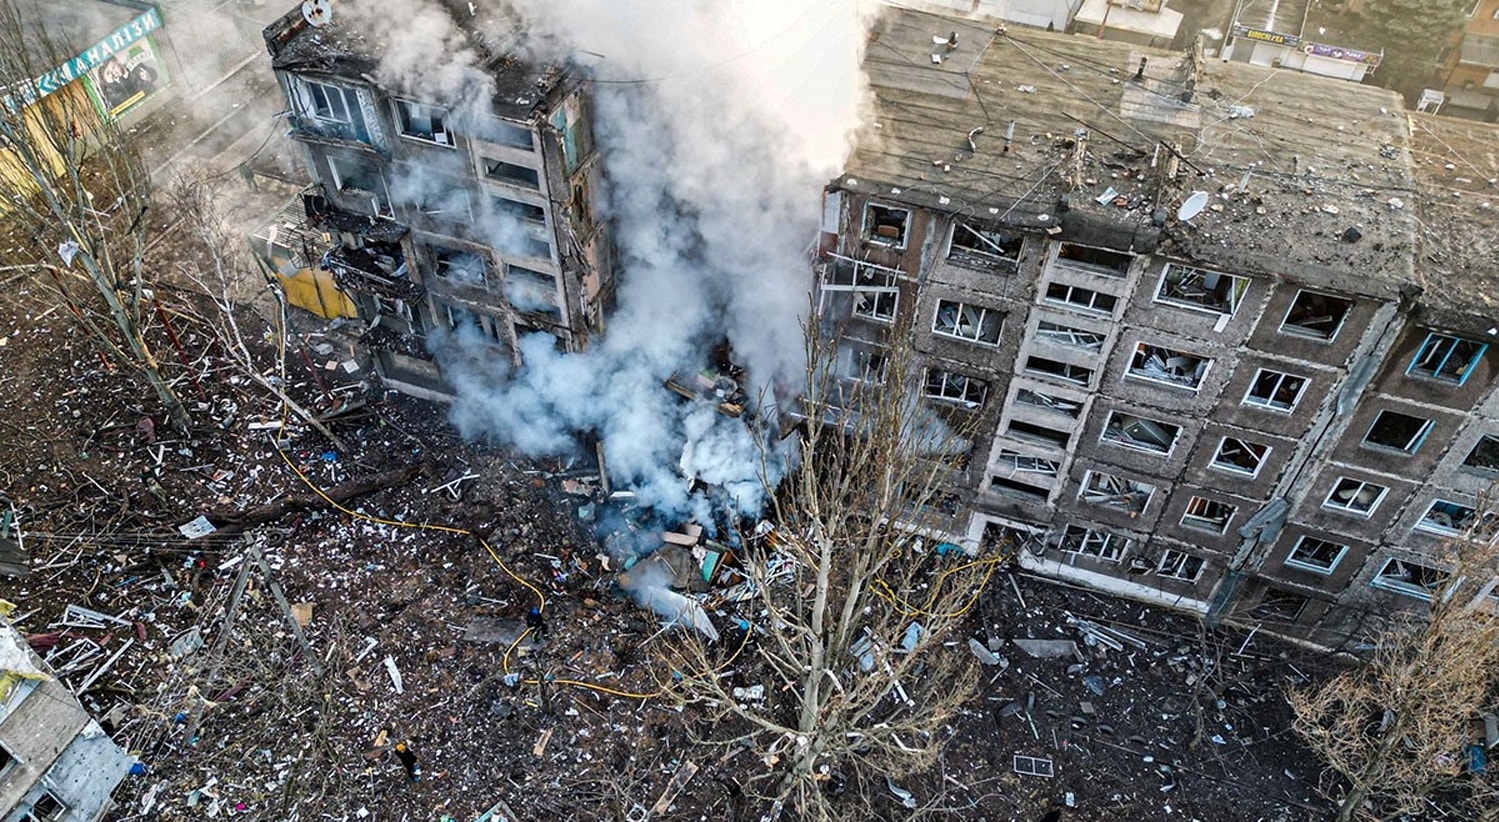  Pr&eacute;dio residencial destru&iacute;do por um m&iacute;ssil russo em Selydove, na regi&atilde;o de Donetsk | Pol&iacute;cia da Ucr&acirc;nia via Reuters 